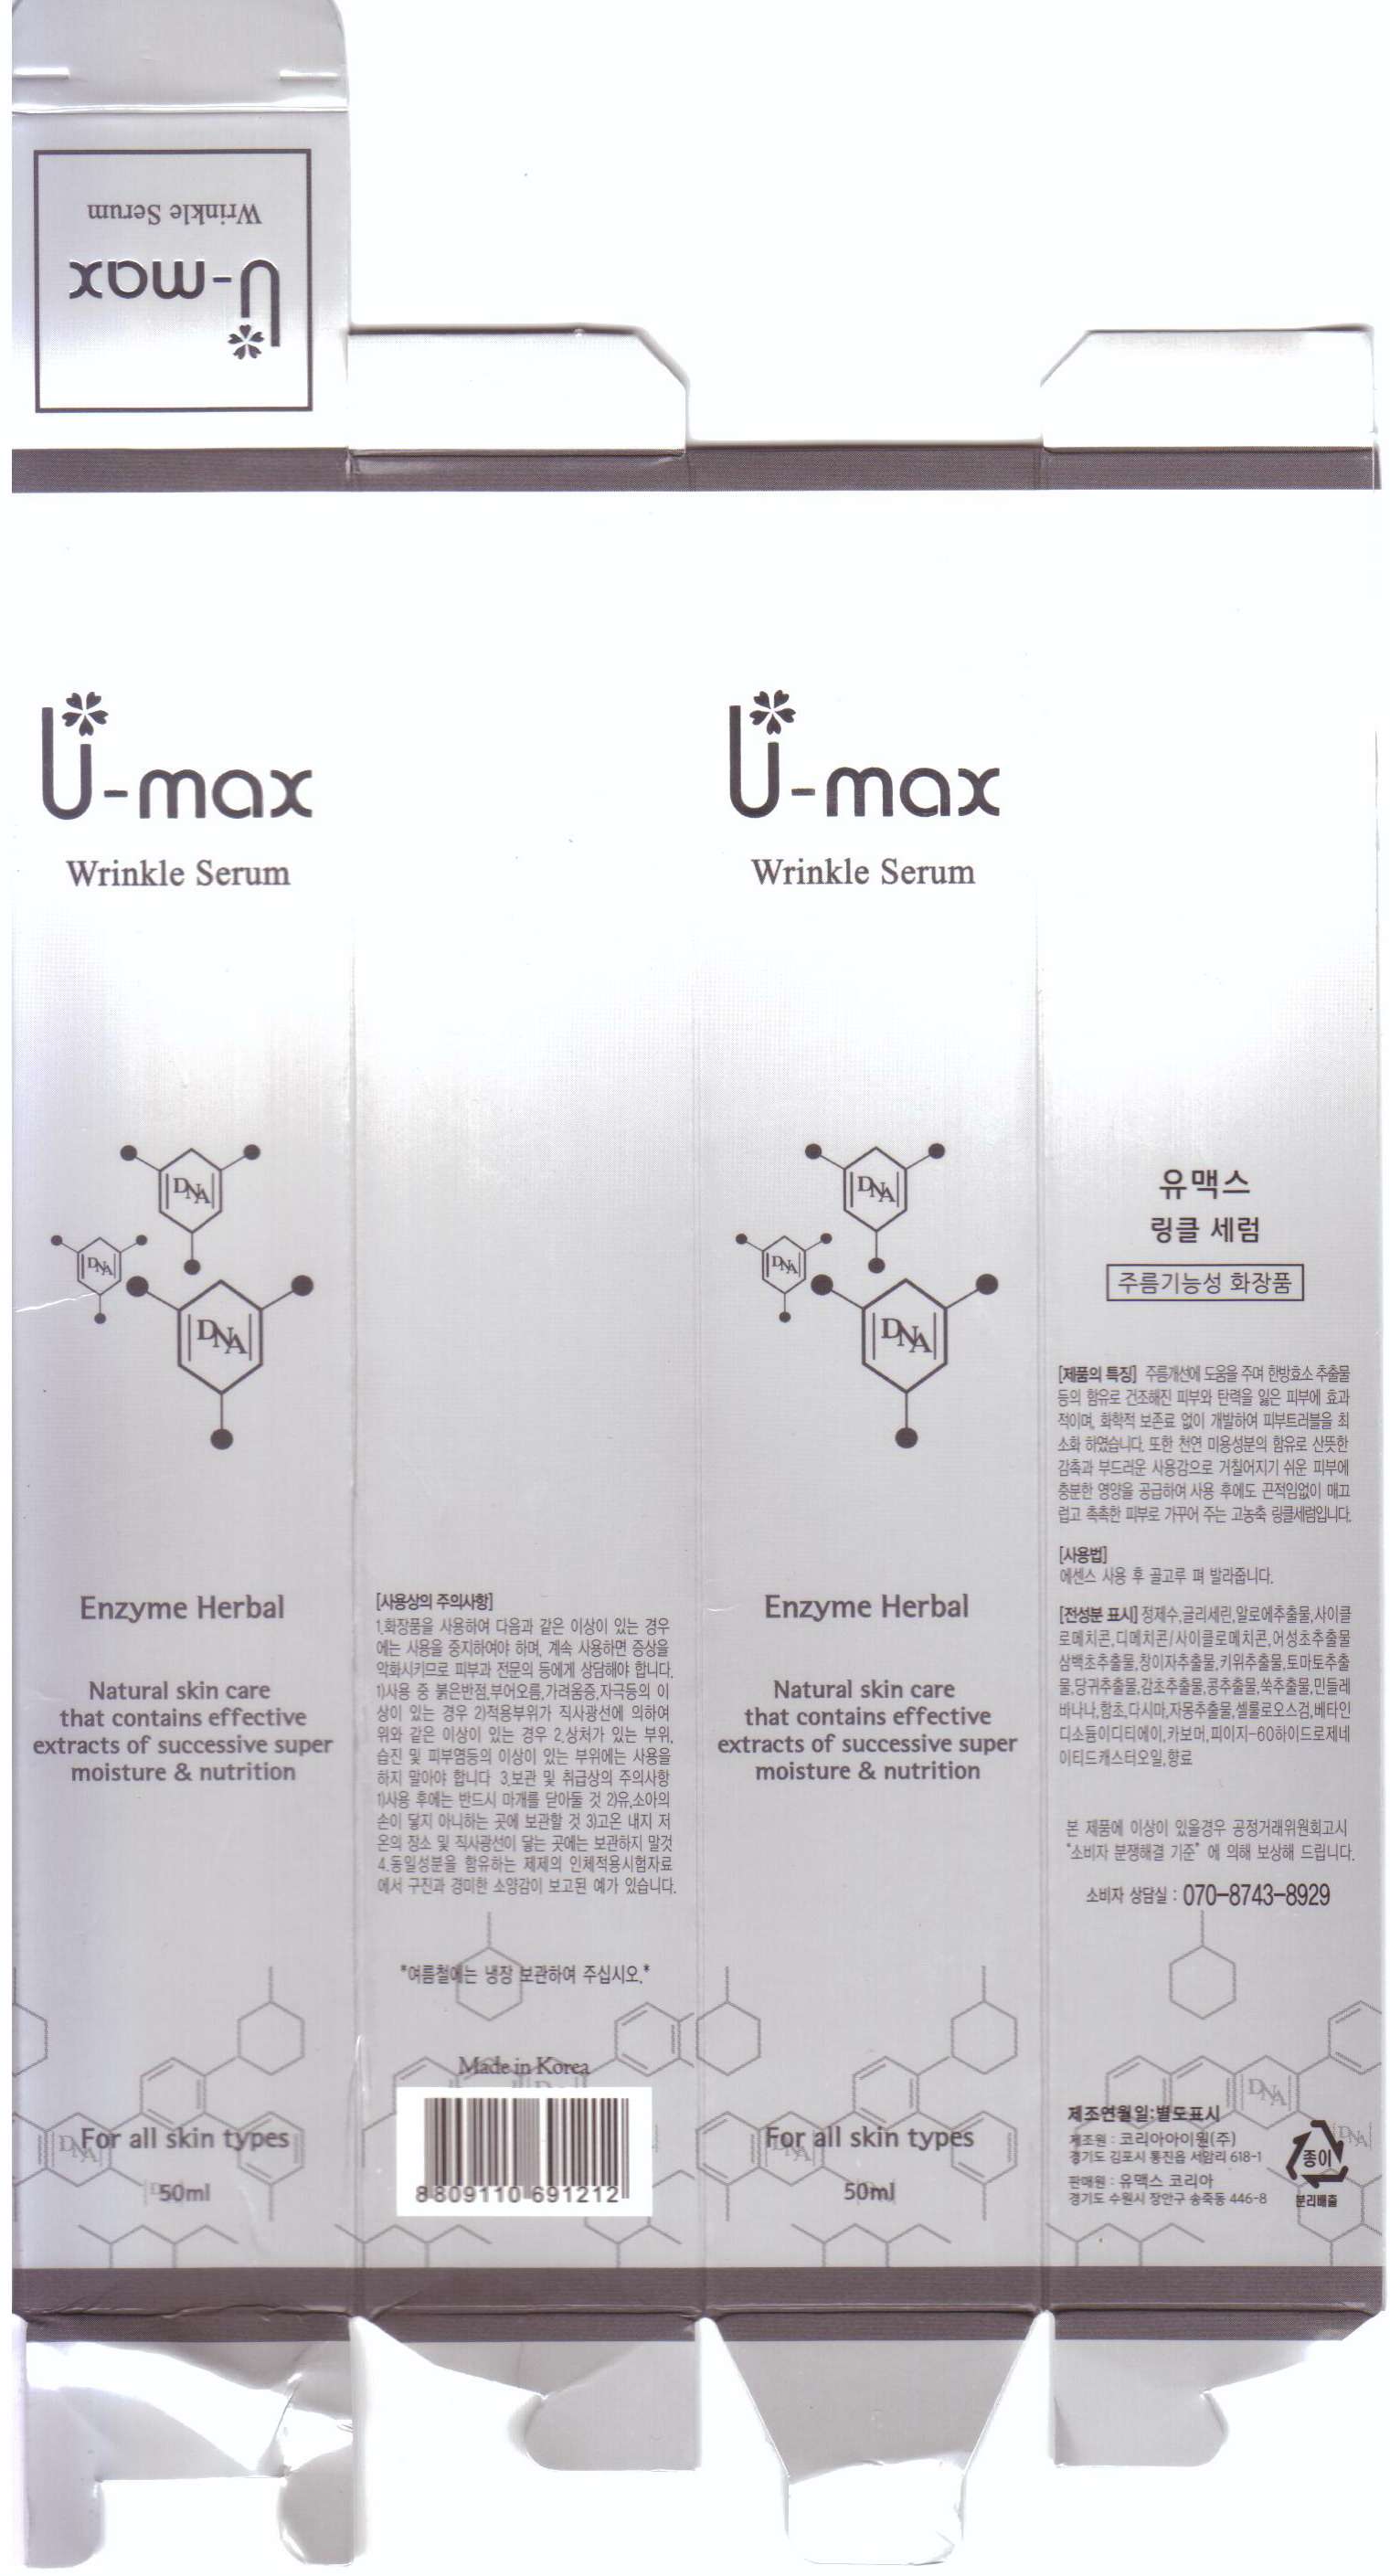 U-max Wrinkle Serum